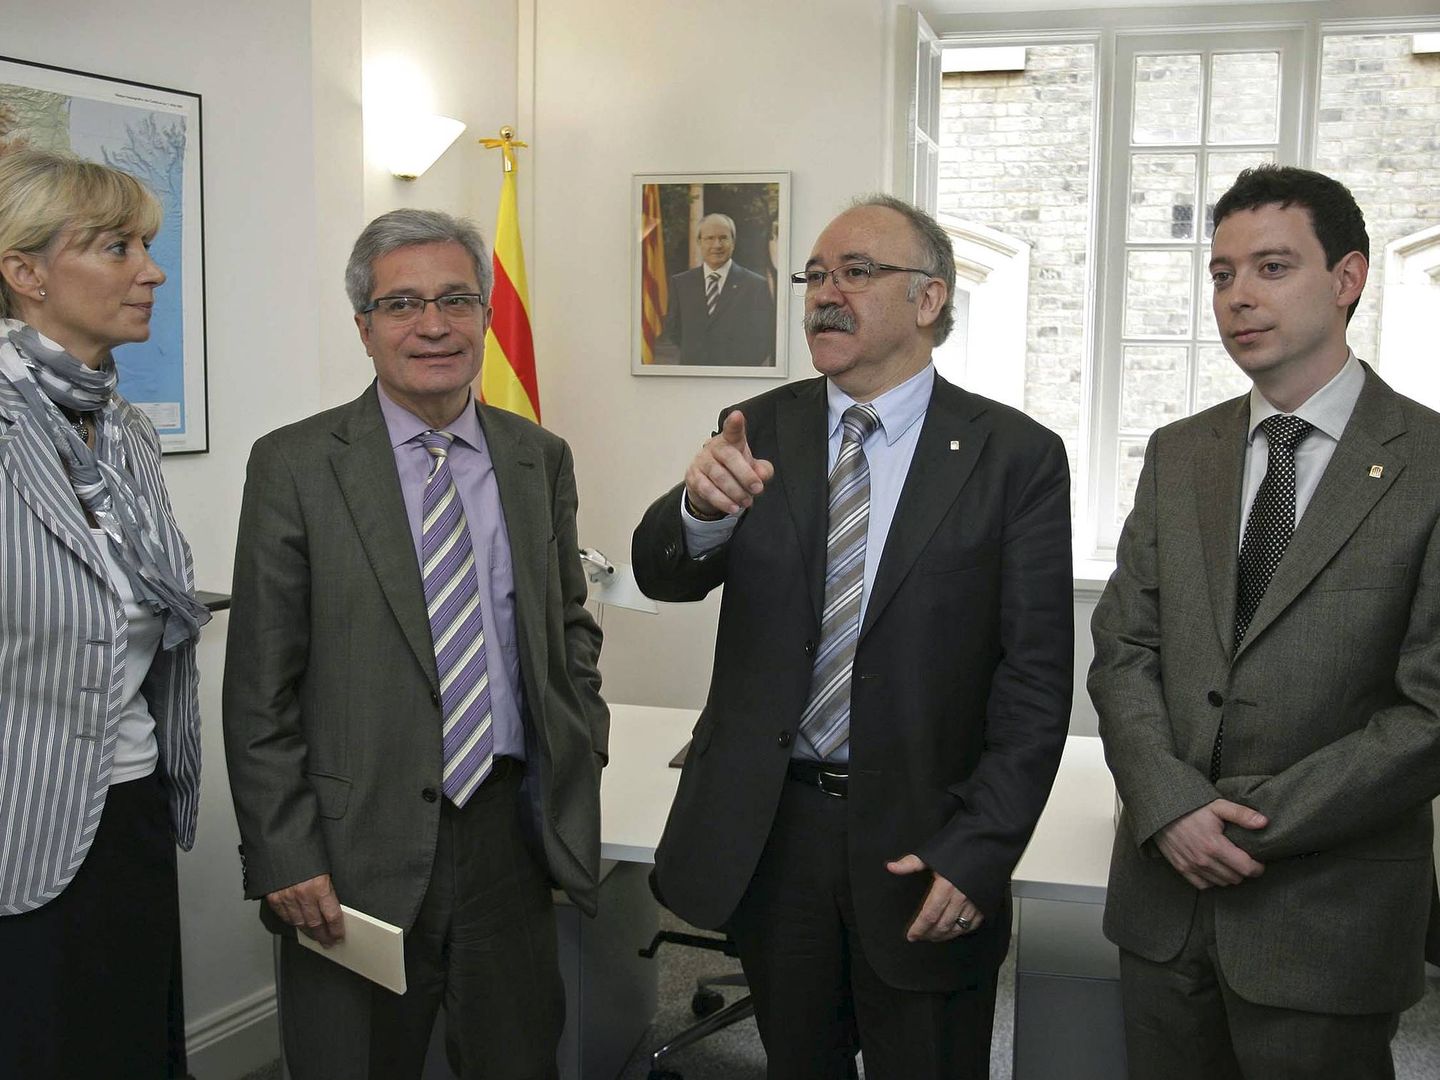 Carod-Rovira (2d), y el conseller Joan Saura (2i), durante la inauguración de la delegación de la Generalitat en el Reino Unido en 2008. (EFE)